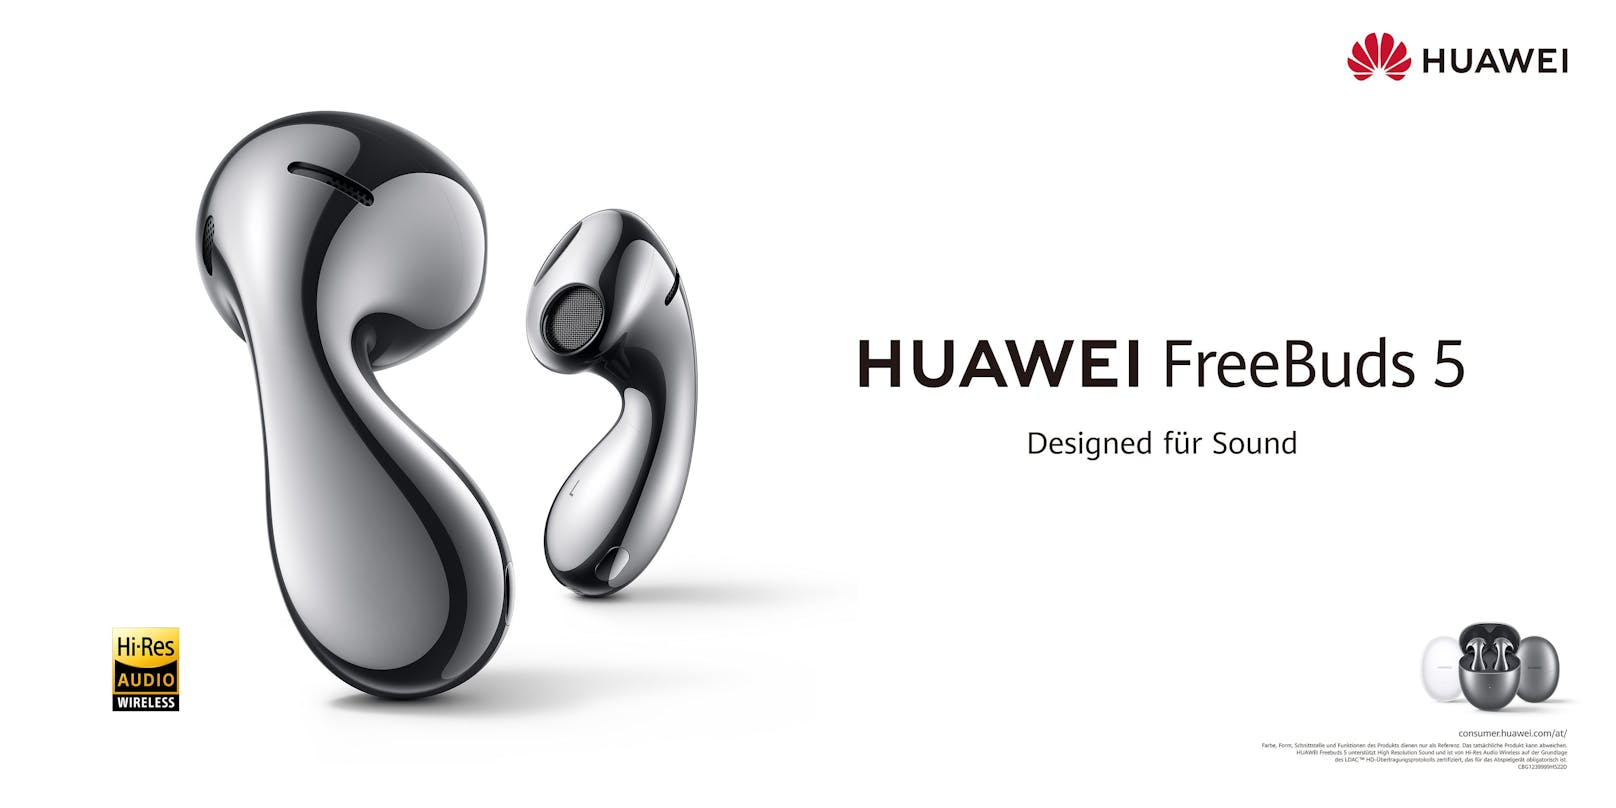 Mit den neuen HUAWEI FreeBuds 5 hat Huawei seine bisher besten In-Ear-Kopfhörer auf den Markt gebracht.